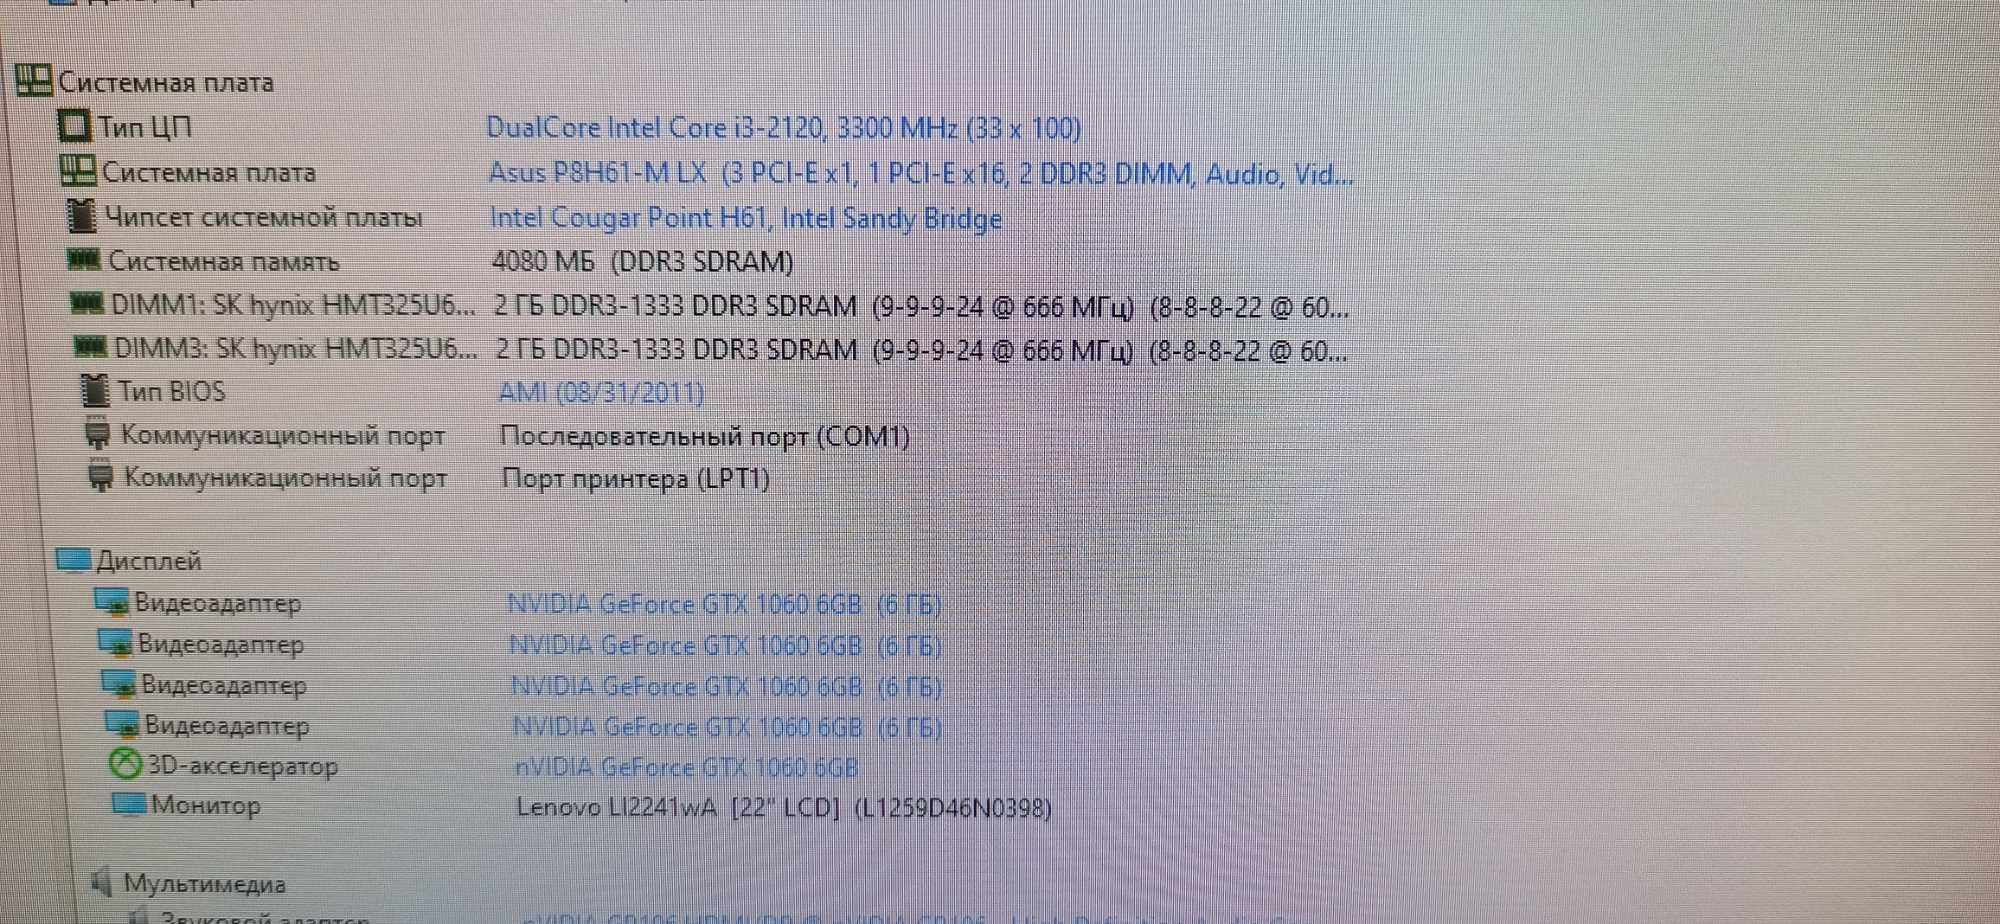 Системний блок Intel Core i3-2120 із зовнішньою відеокартою